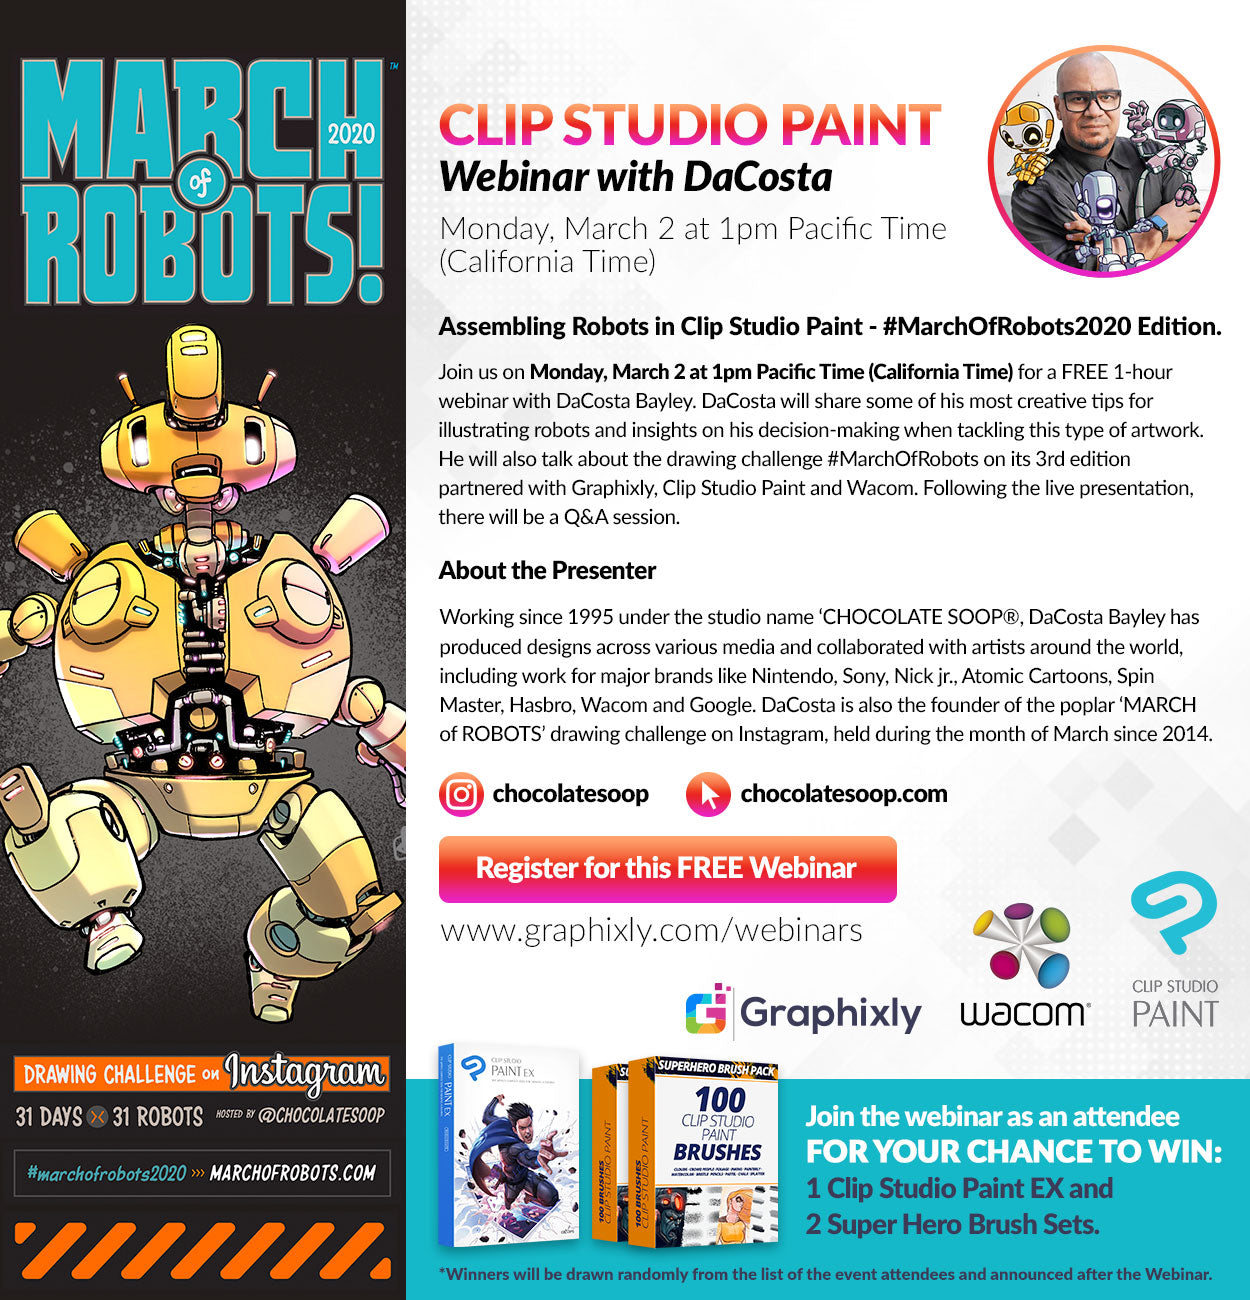 Webinar - Assembling Robots in Clip Studio Paint - #MarchOfRobots2020 Edition